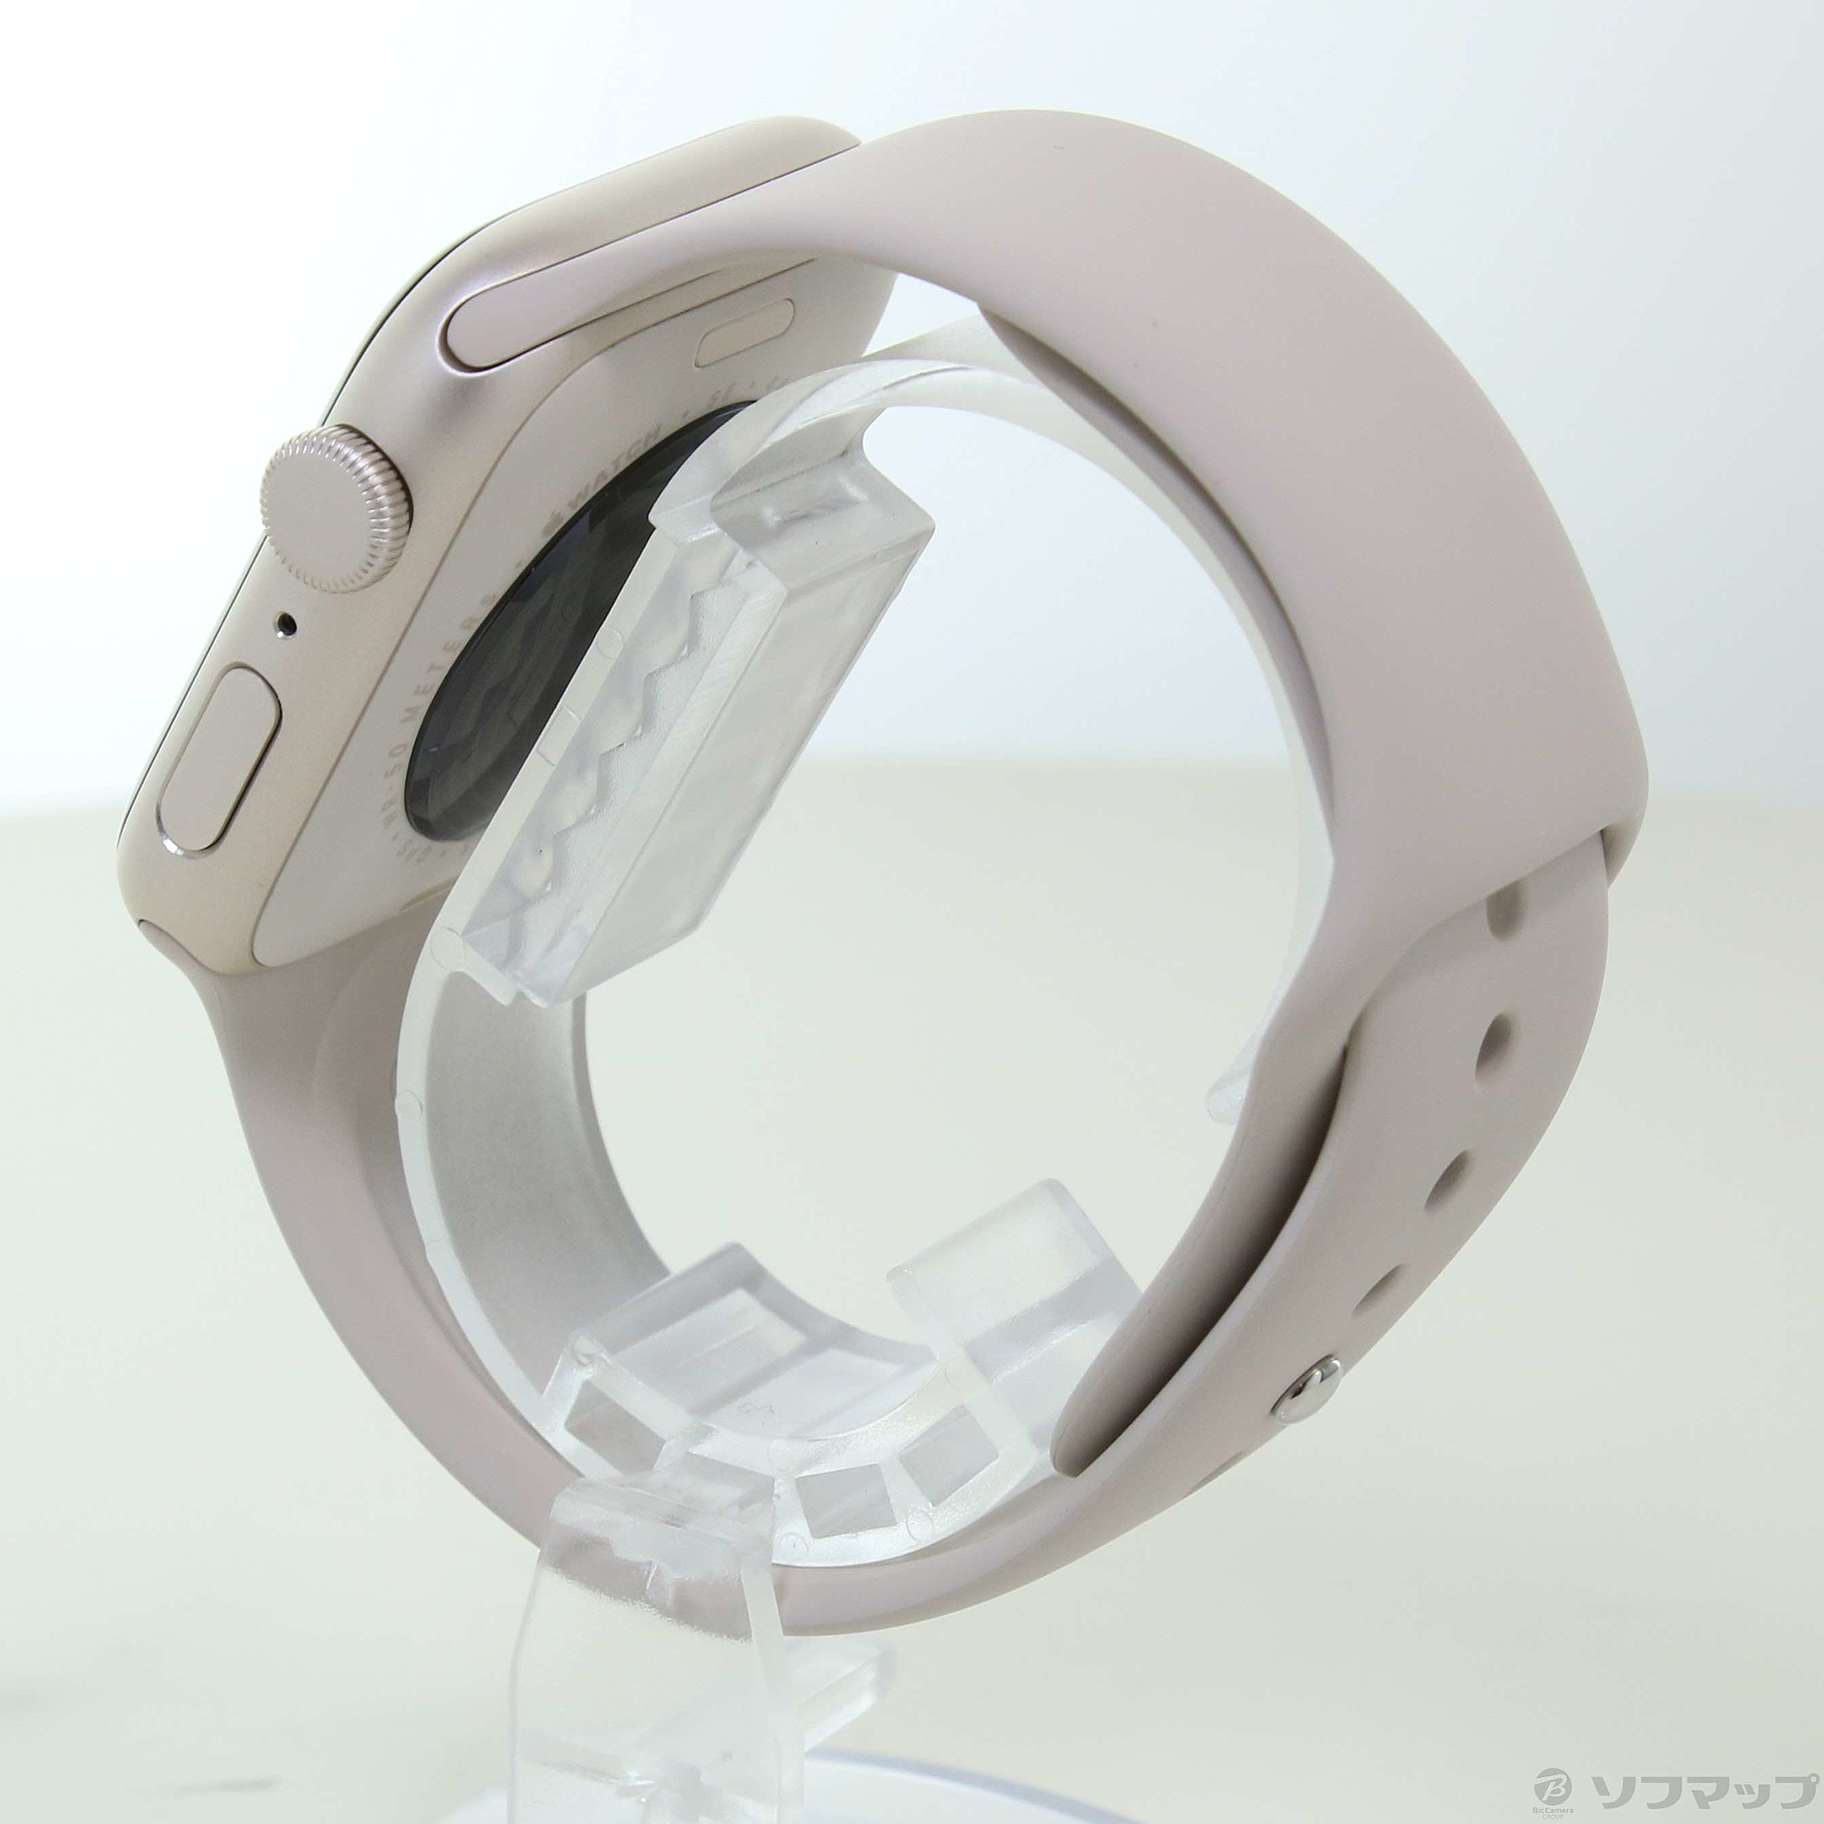 中古】〔展示品〕 Apple Watch SE 第2世代 GPS 44mm スターライト